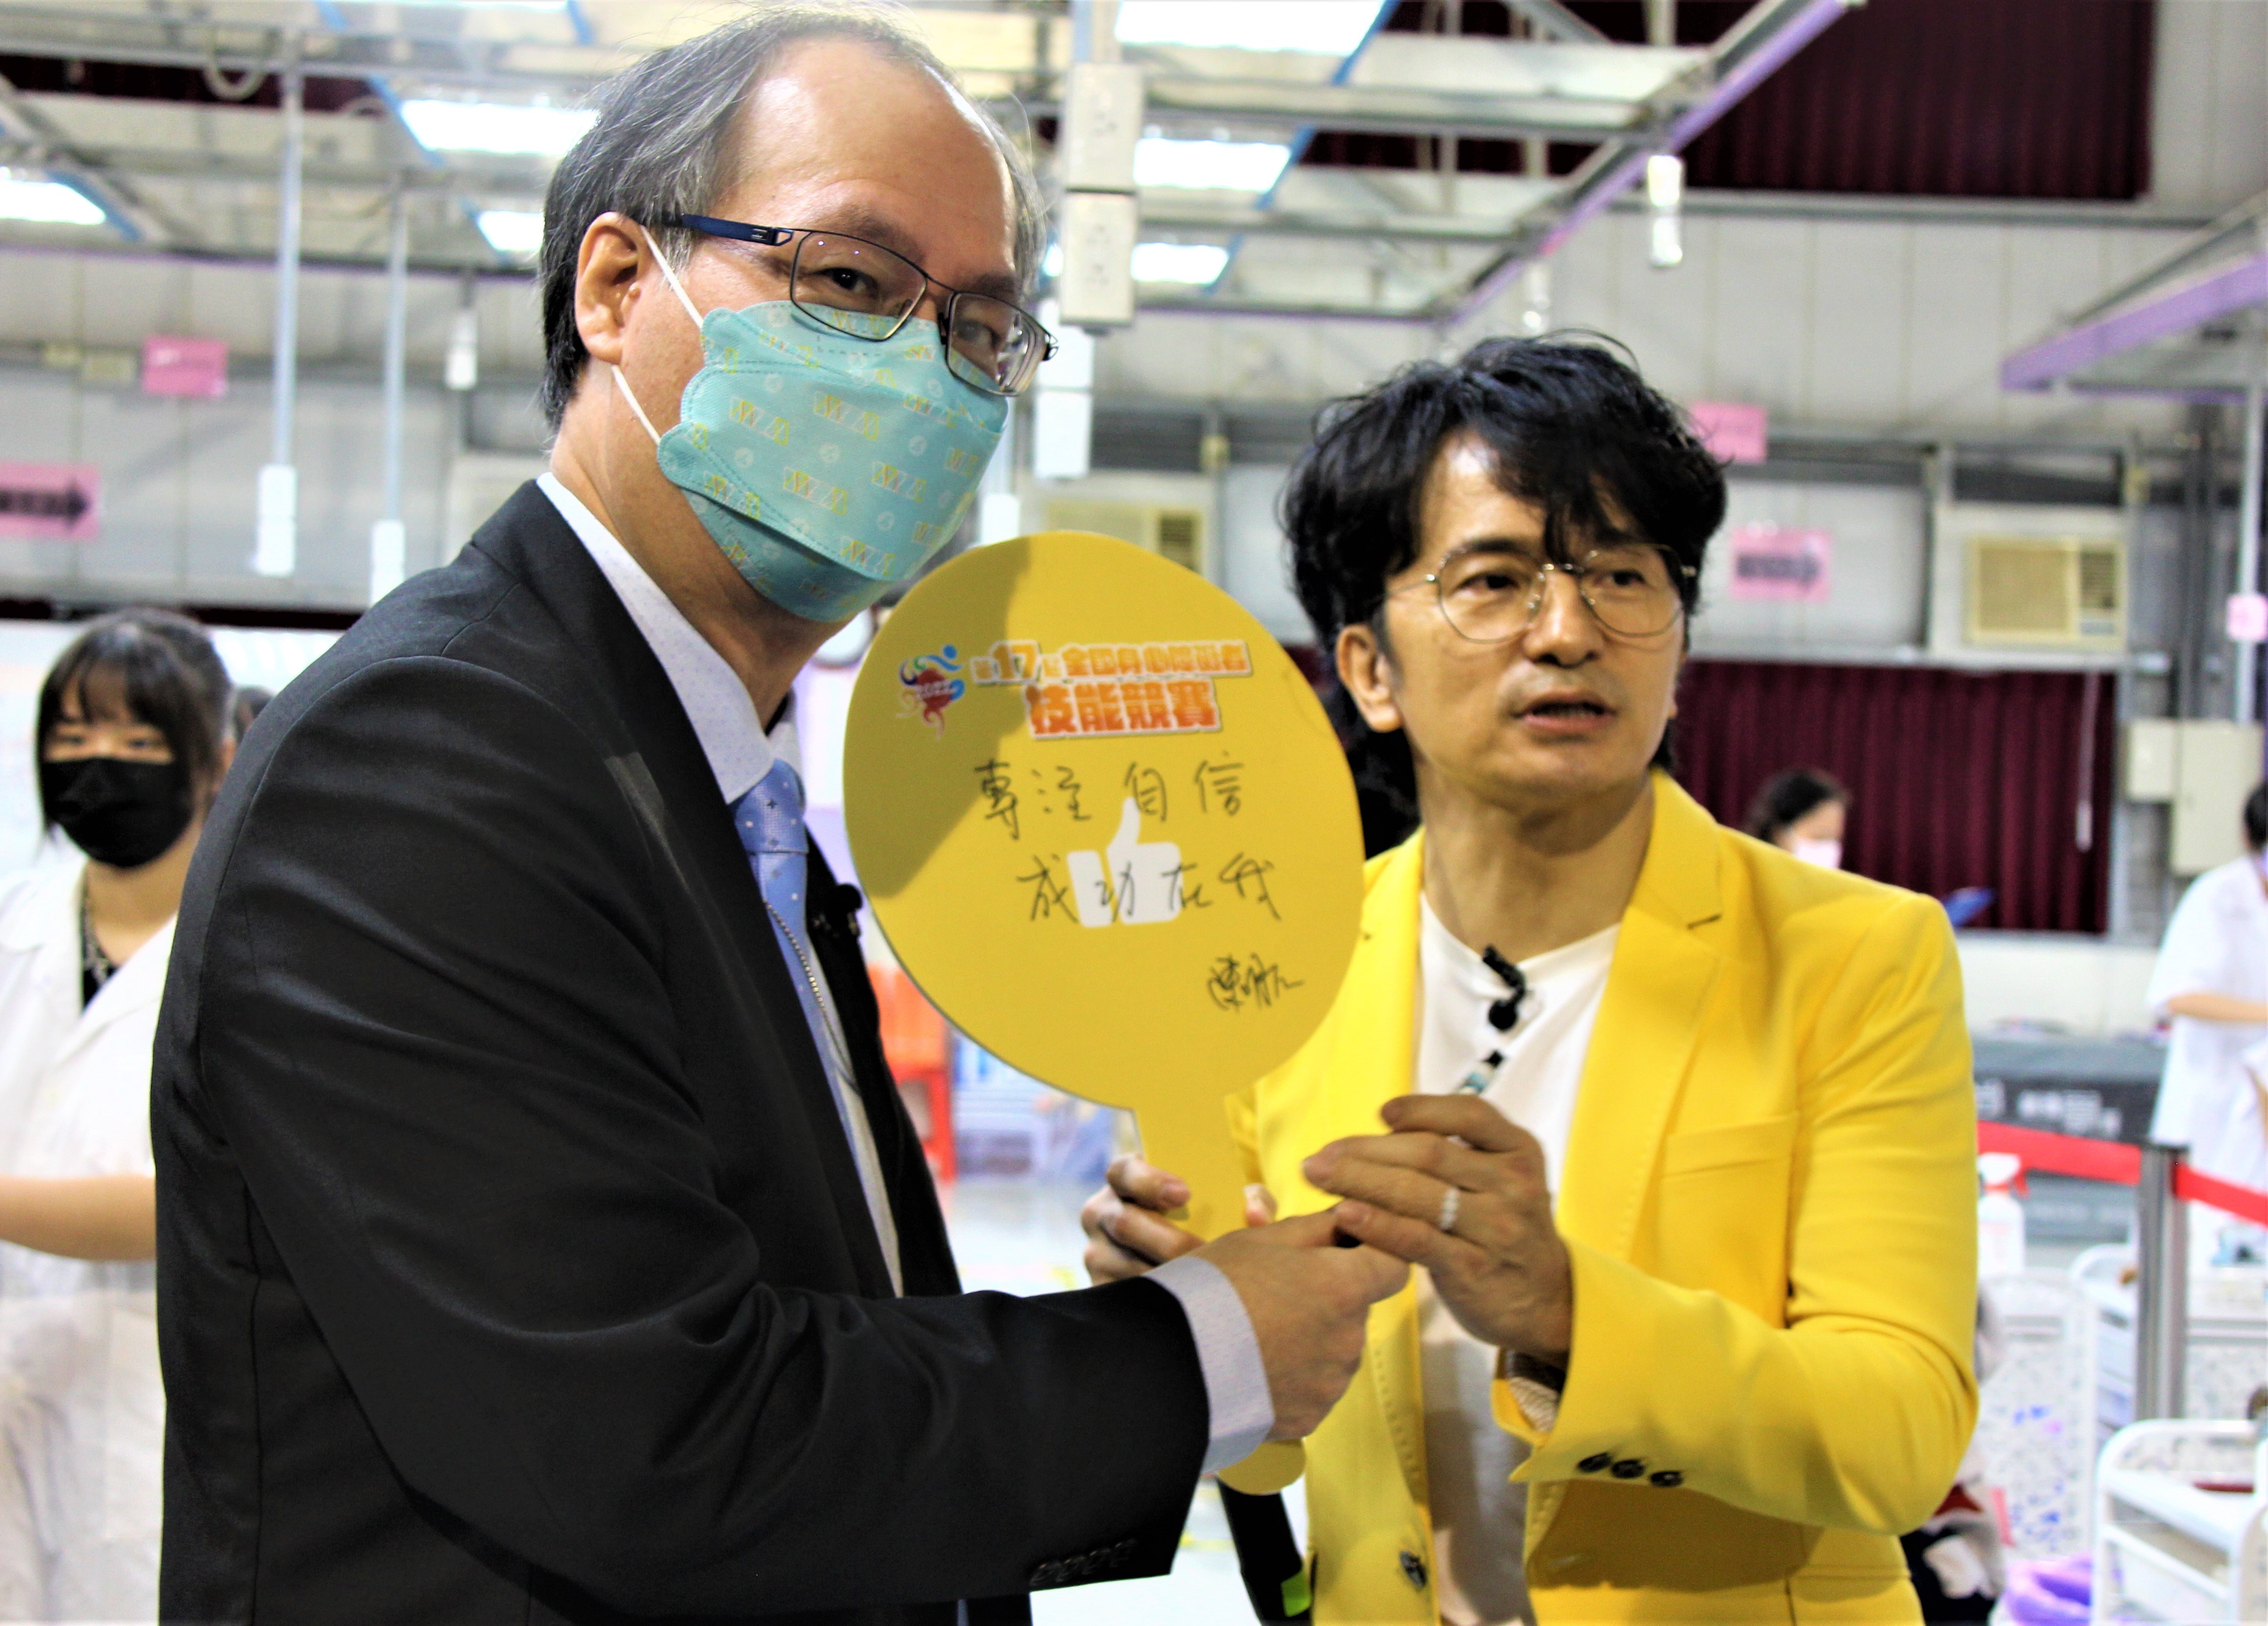 勞動部常務次長陳明仁(左)在加油板上手寫鼓勵選手的話